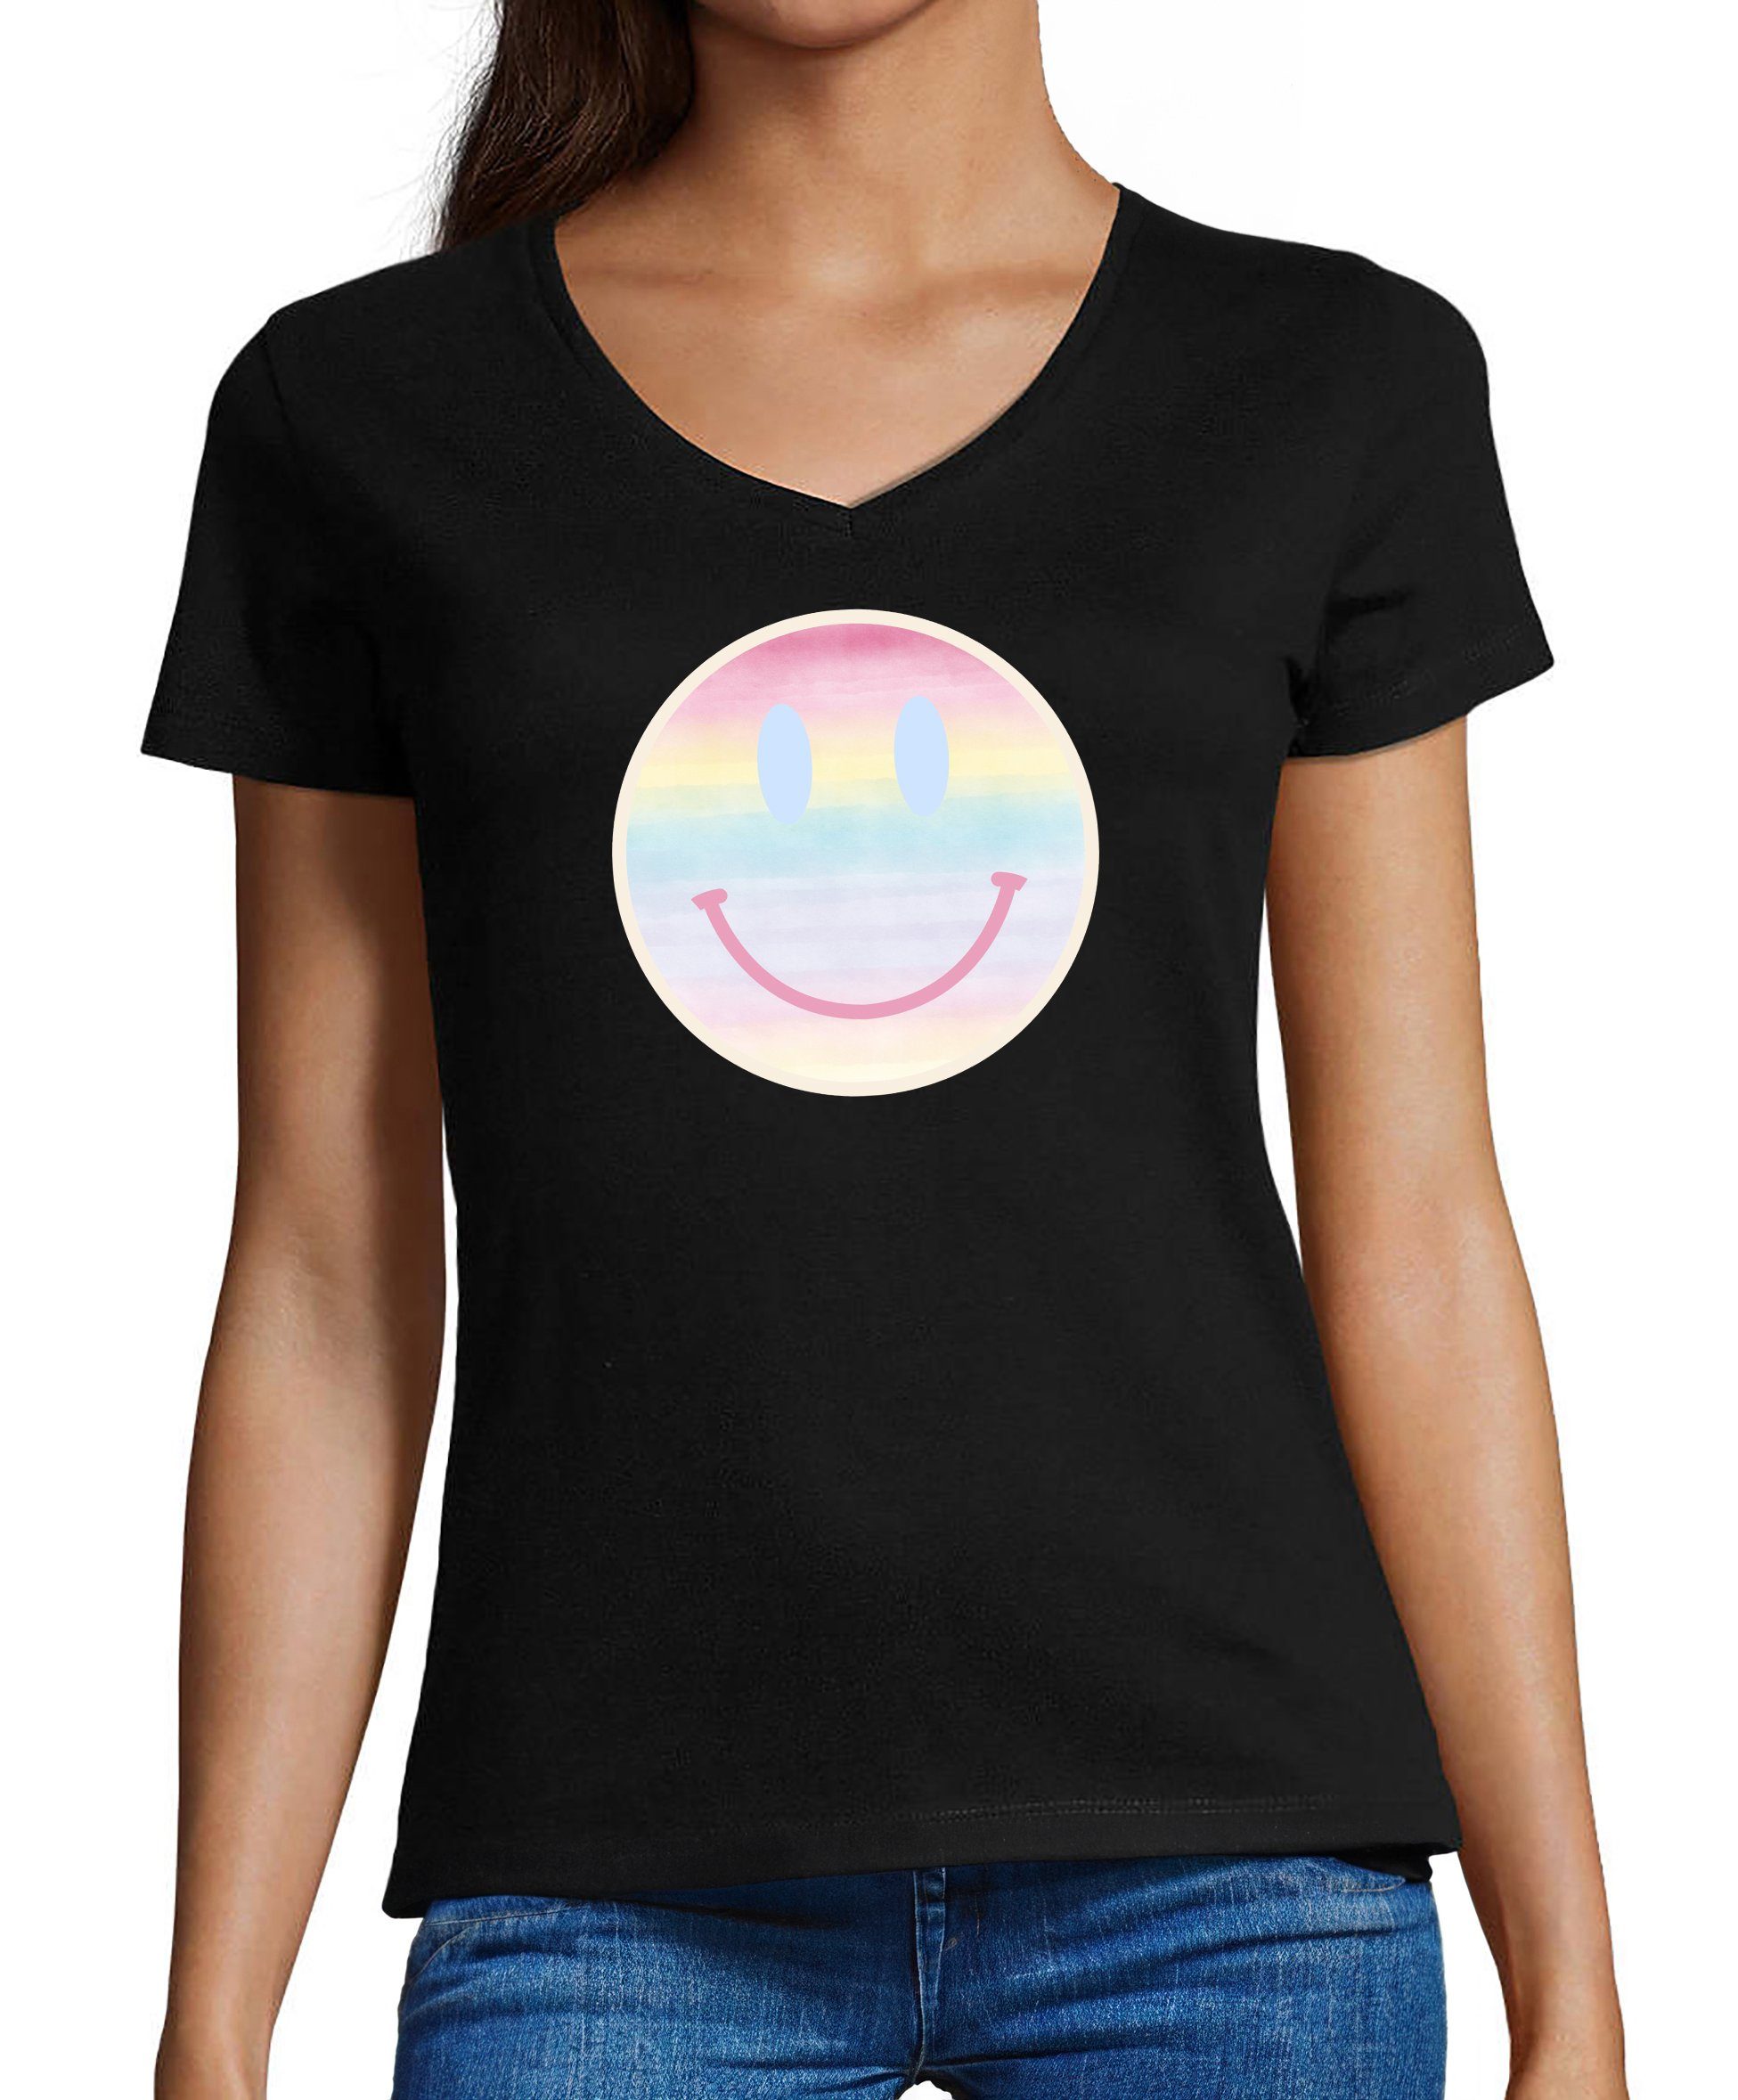 MyDesign24 T-Shirt Damen Smiley Print Shirt - Lächelnder pastellfarbener Smiley V-Ausschnitt Baumwollshirt mit Aufdruck Slim Fit, i297 schwarz